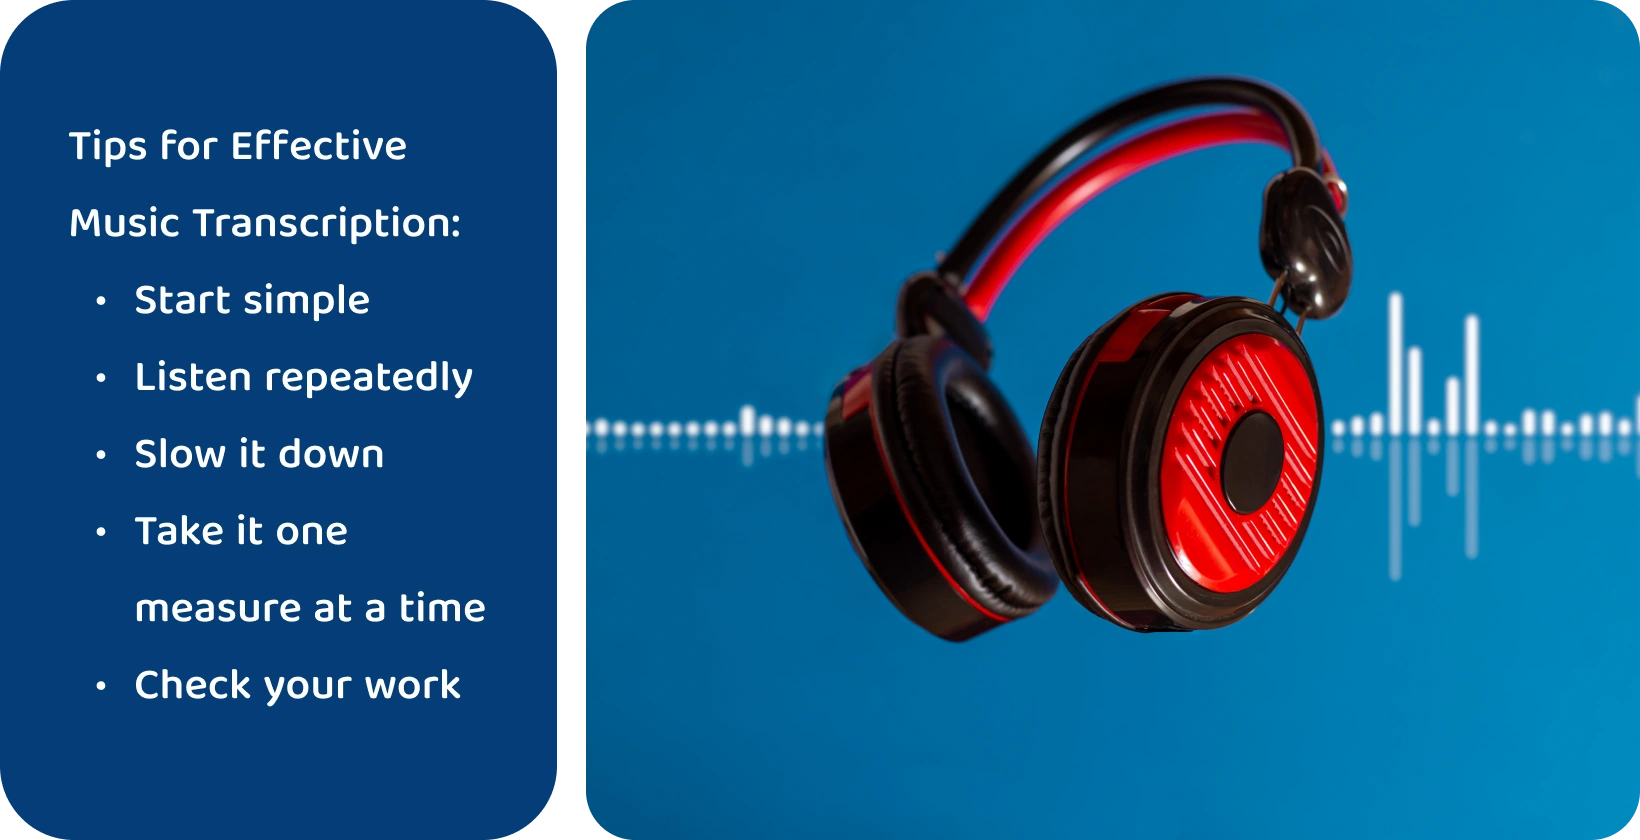 Słuchawki na tle kształtu fali, reprezentujące narzędzia do ulepszania transkrypcji muzyki poprzez skupione i wielokrotne słuchanie.